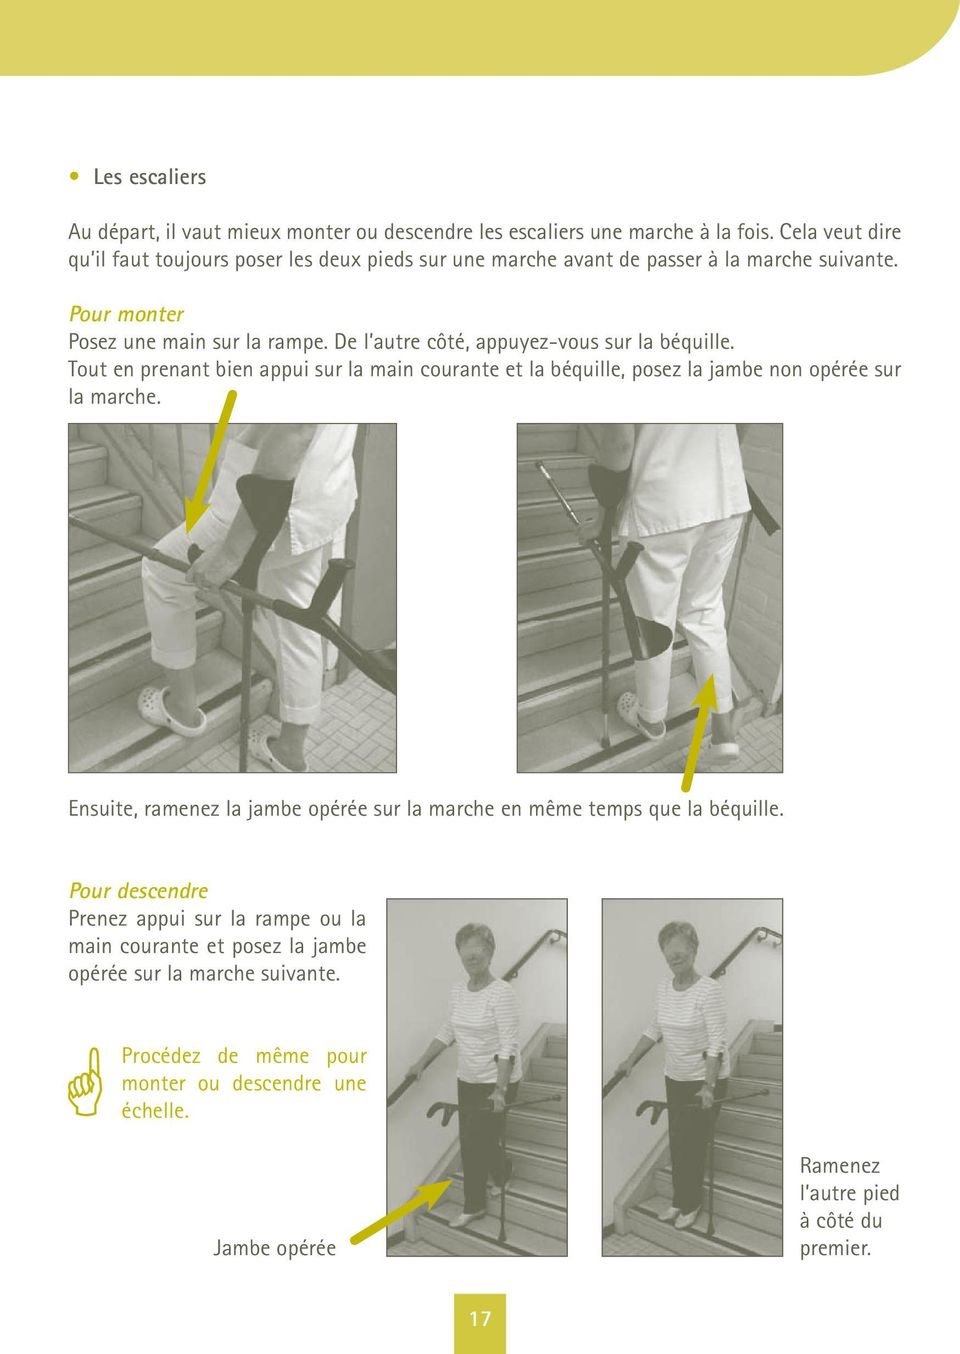 De l autre côté, appuyez-vous sur la béquille. Tout en prenant bien appui sur la main courante et la béquille, posez la jambe non opérée sur la marche.